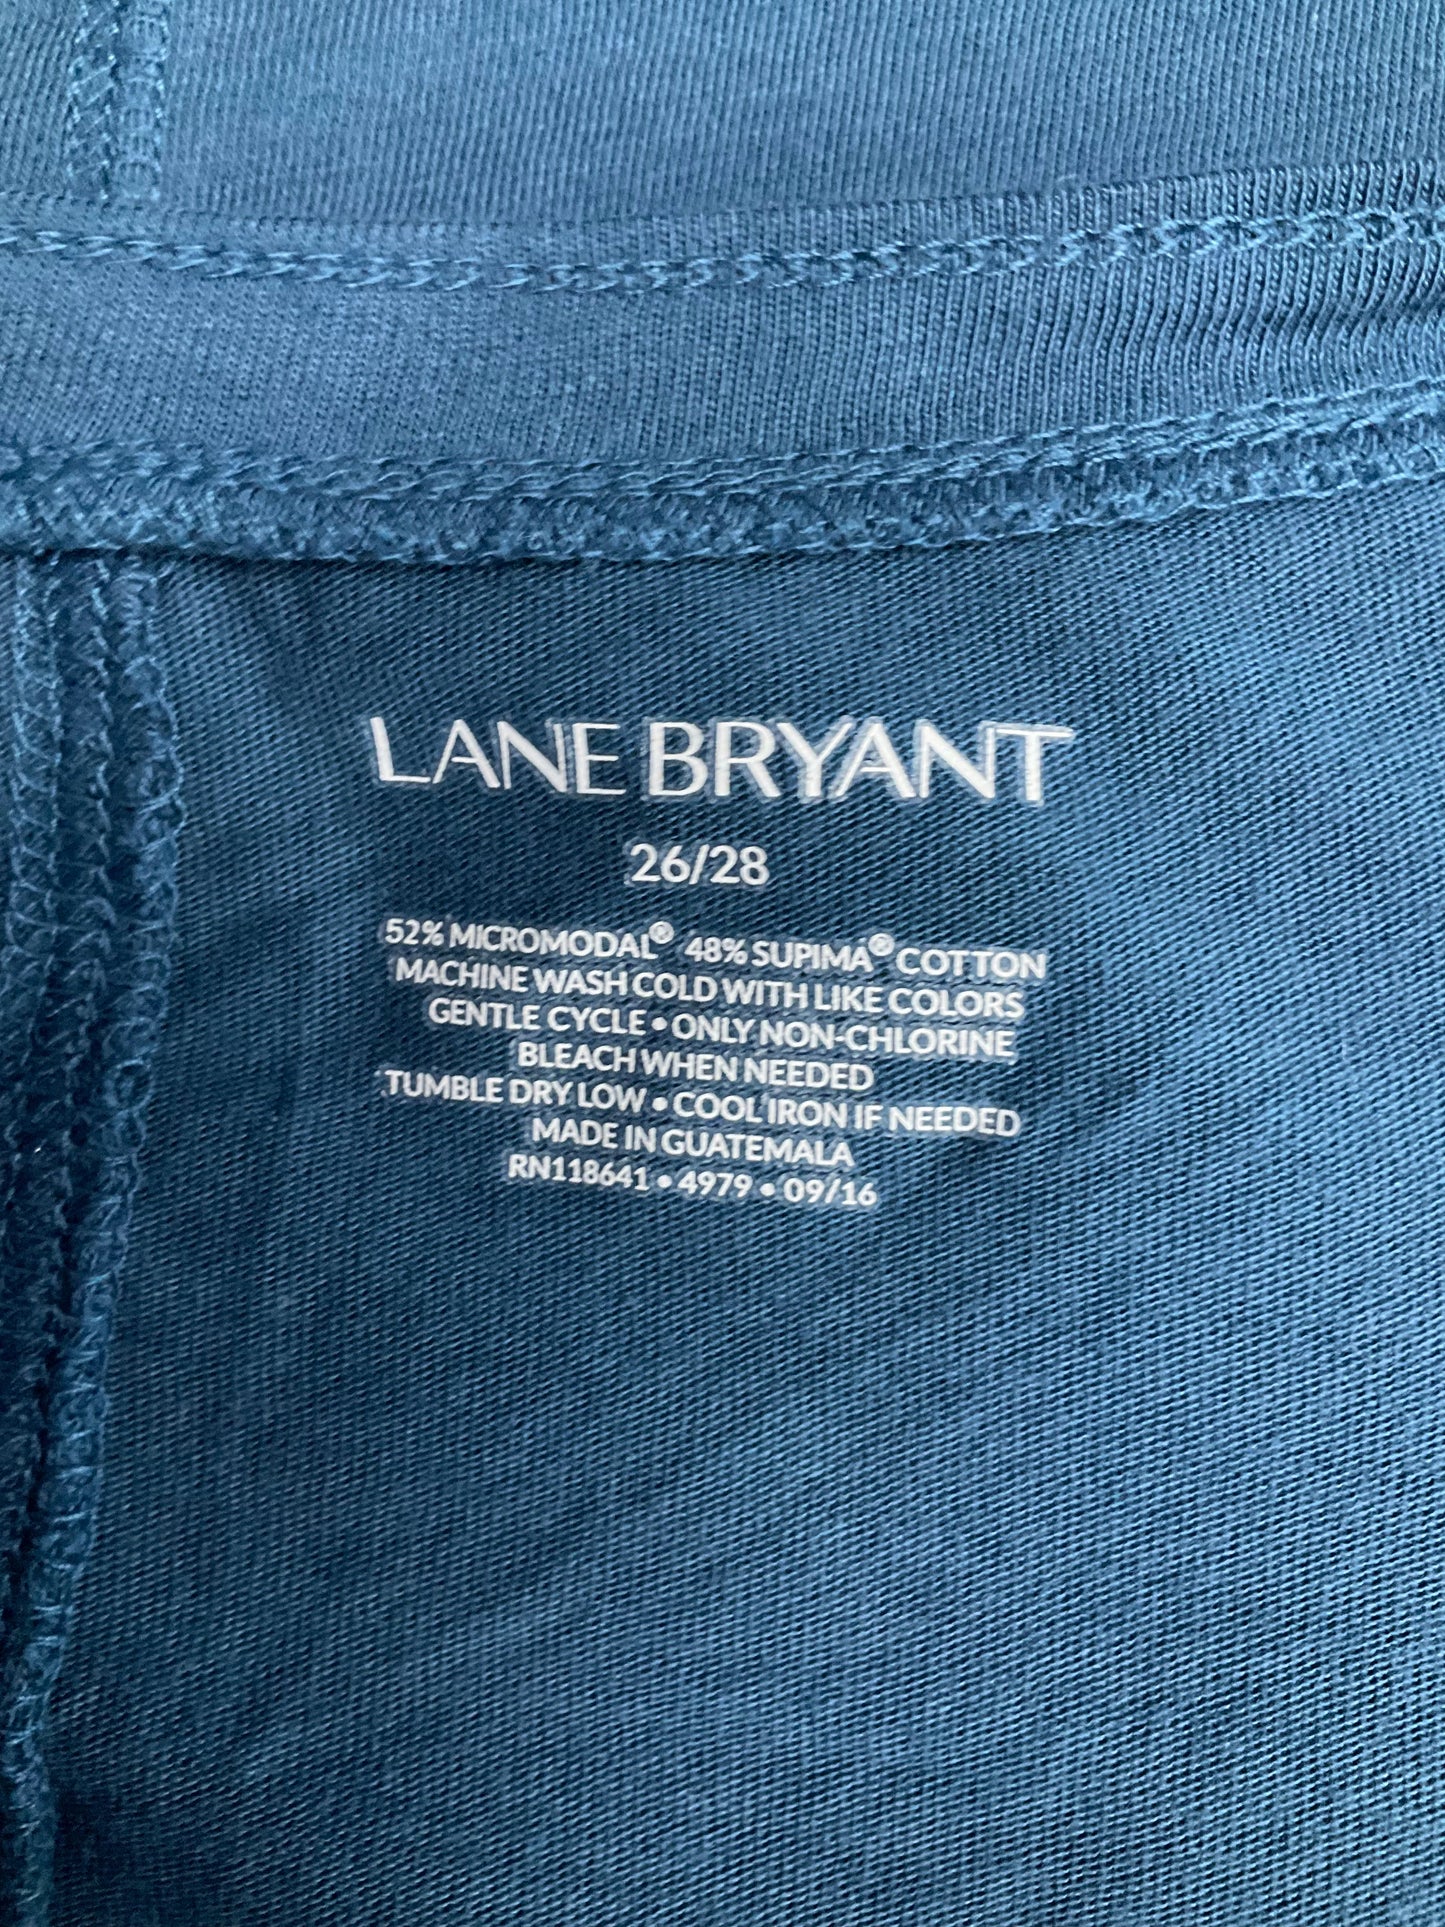 Blue Top Long Sleeve Basic Lane Bryant, Size 4x